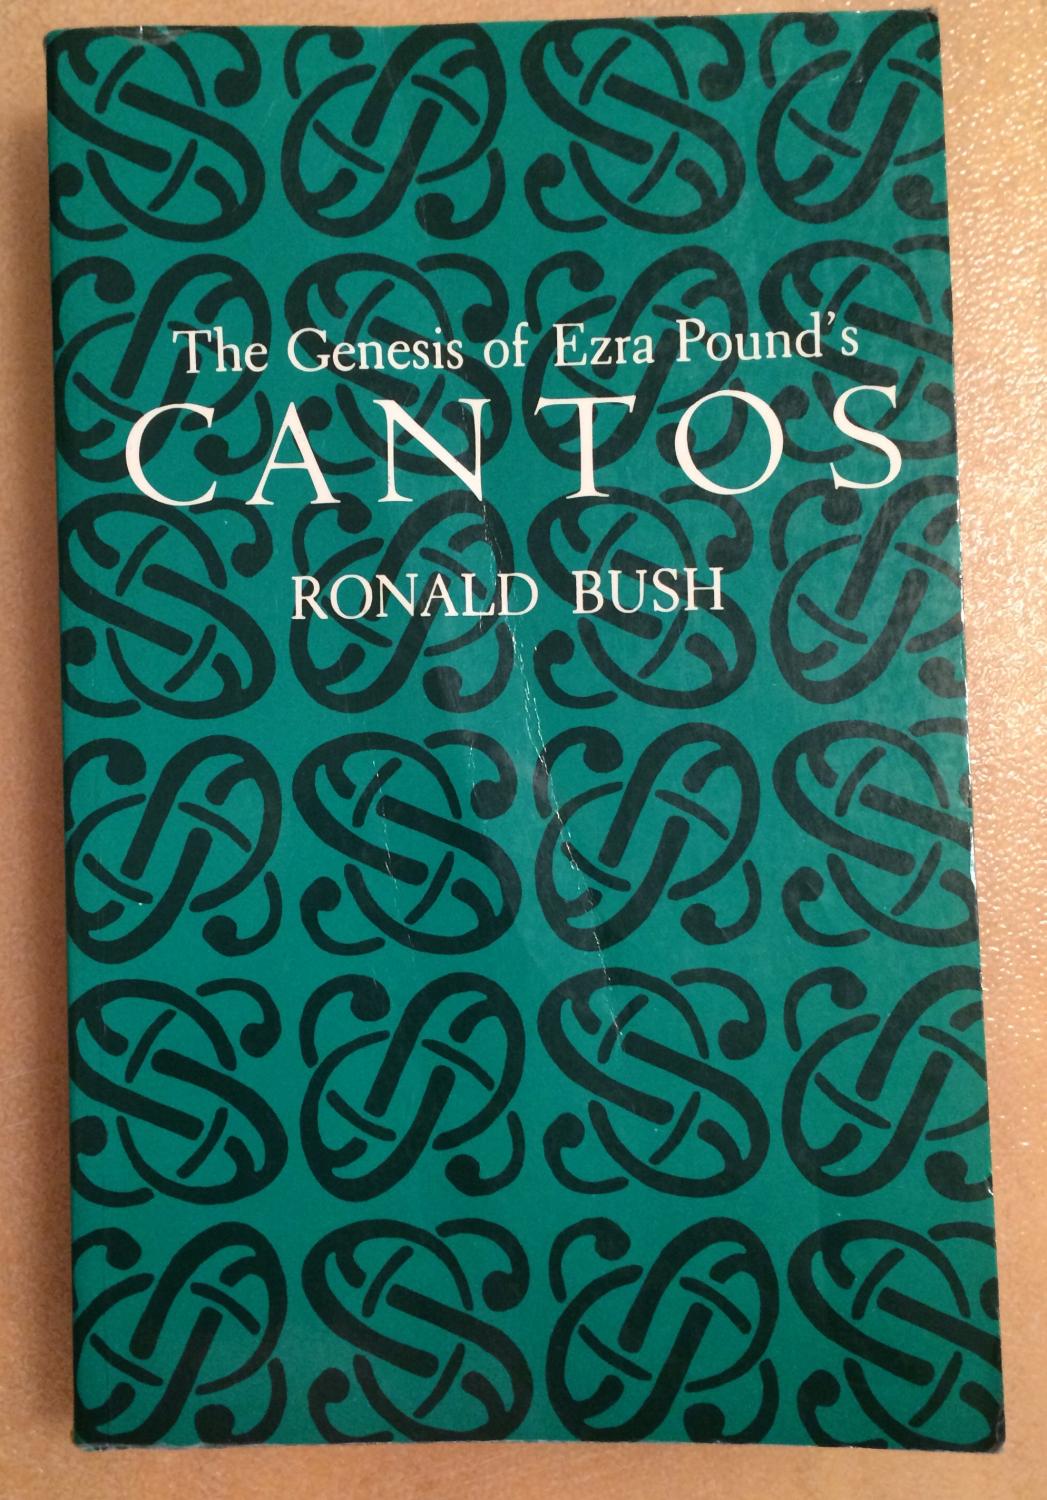 The Genesis of Ezra Pound's Cantos (Princeton Legacy Library, 528)